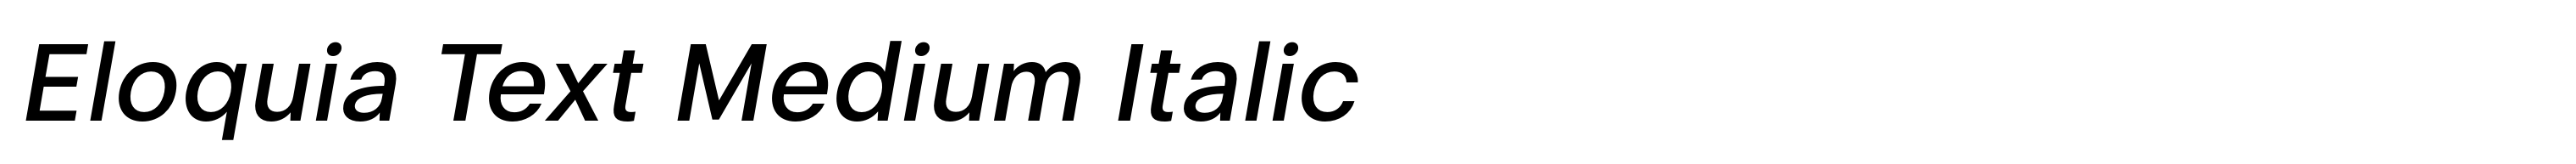 Eloquia Text Medium Italic